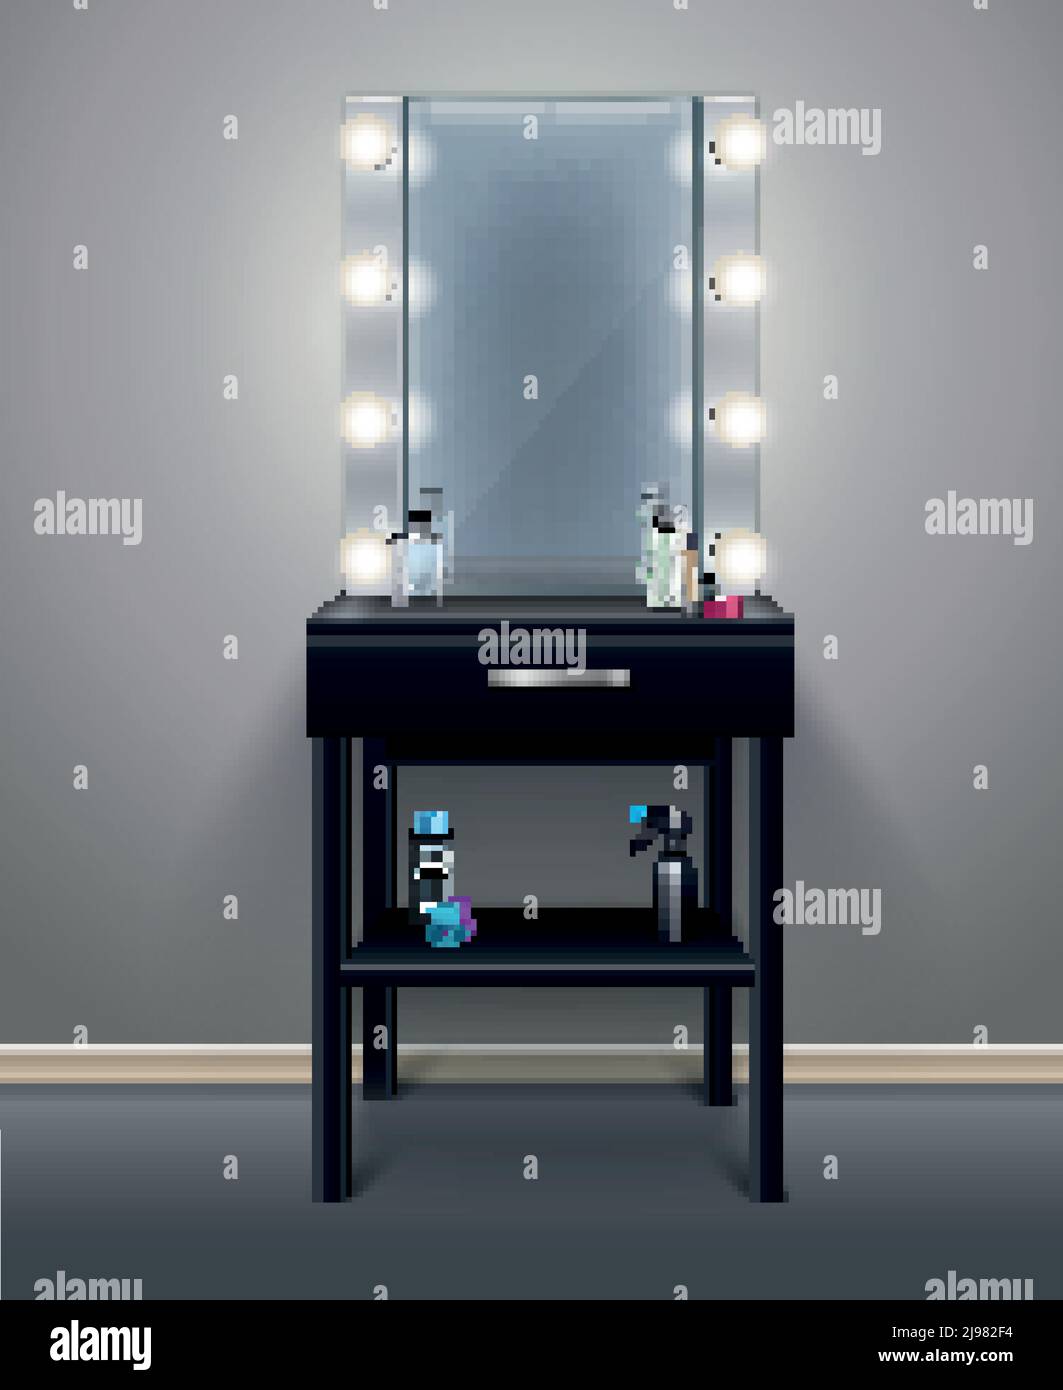 Miroir de maquillage professionnel avec lumières allumées dans la chambre vide illustration réaliste du vecteur de composition Illustration de Vecteur